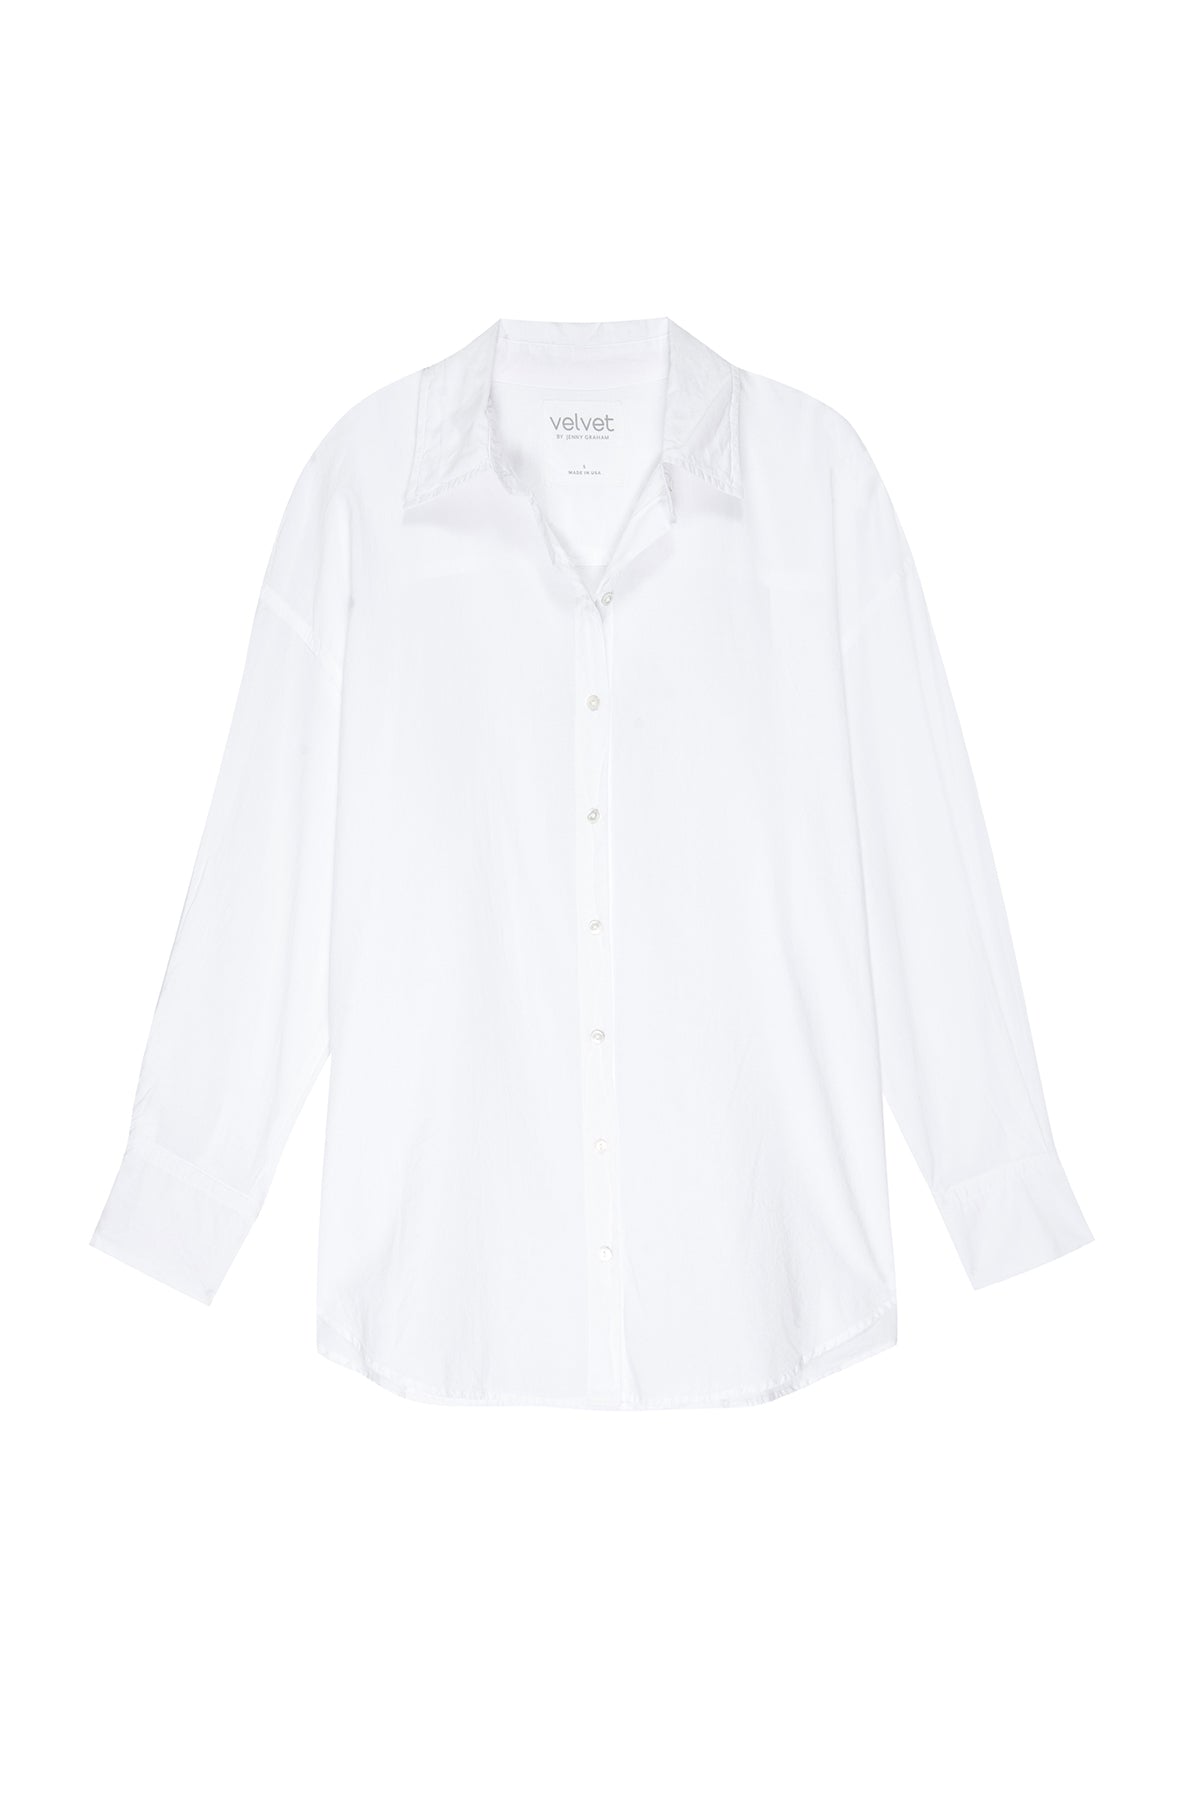 redondo shirt flat white-24344127406273